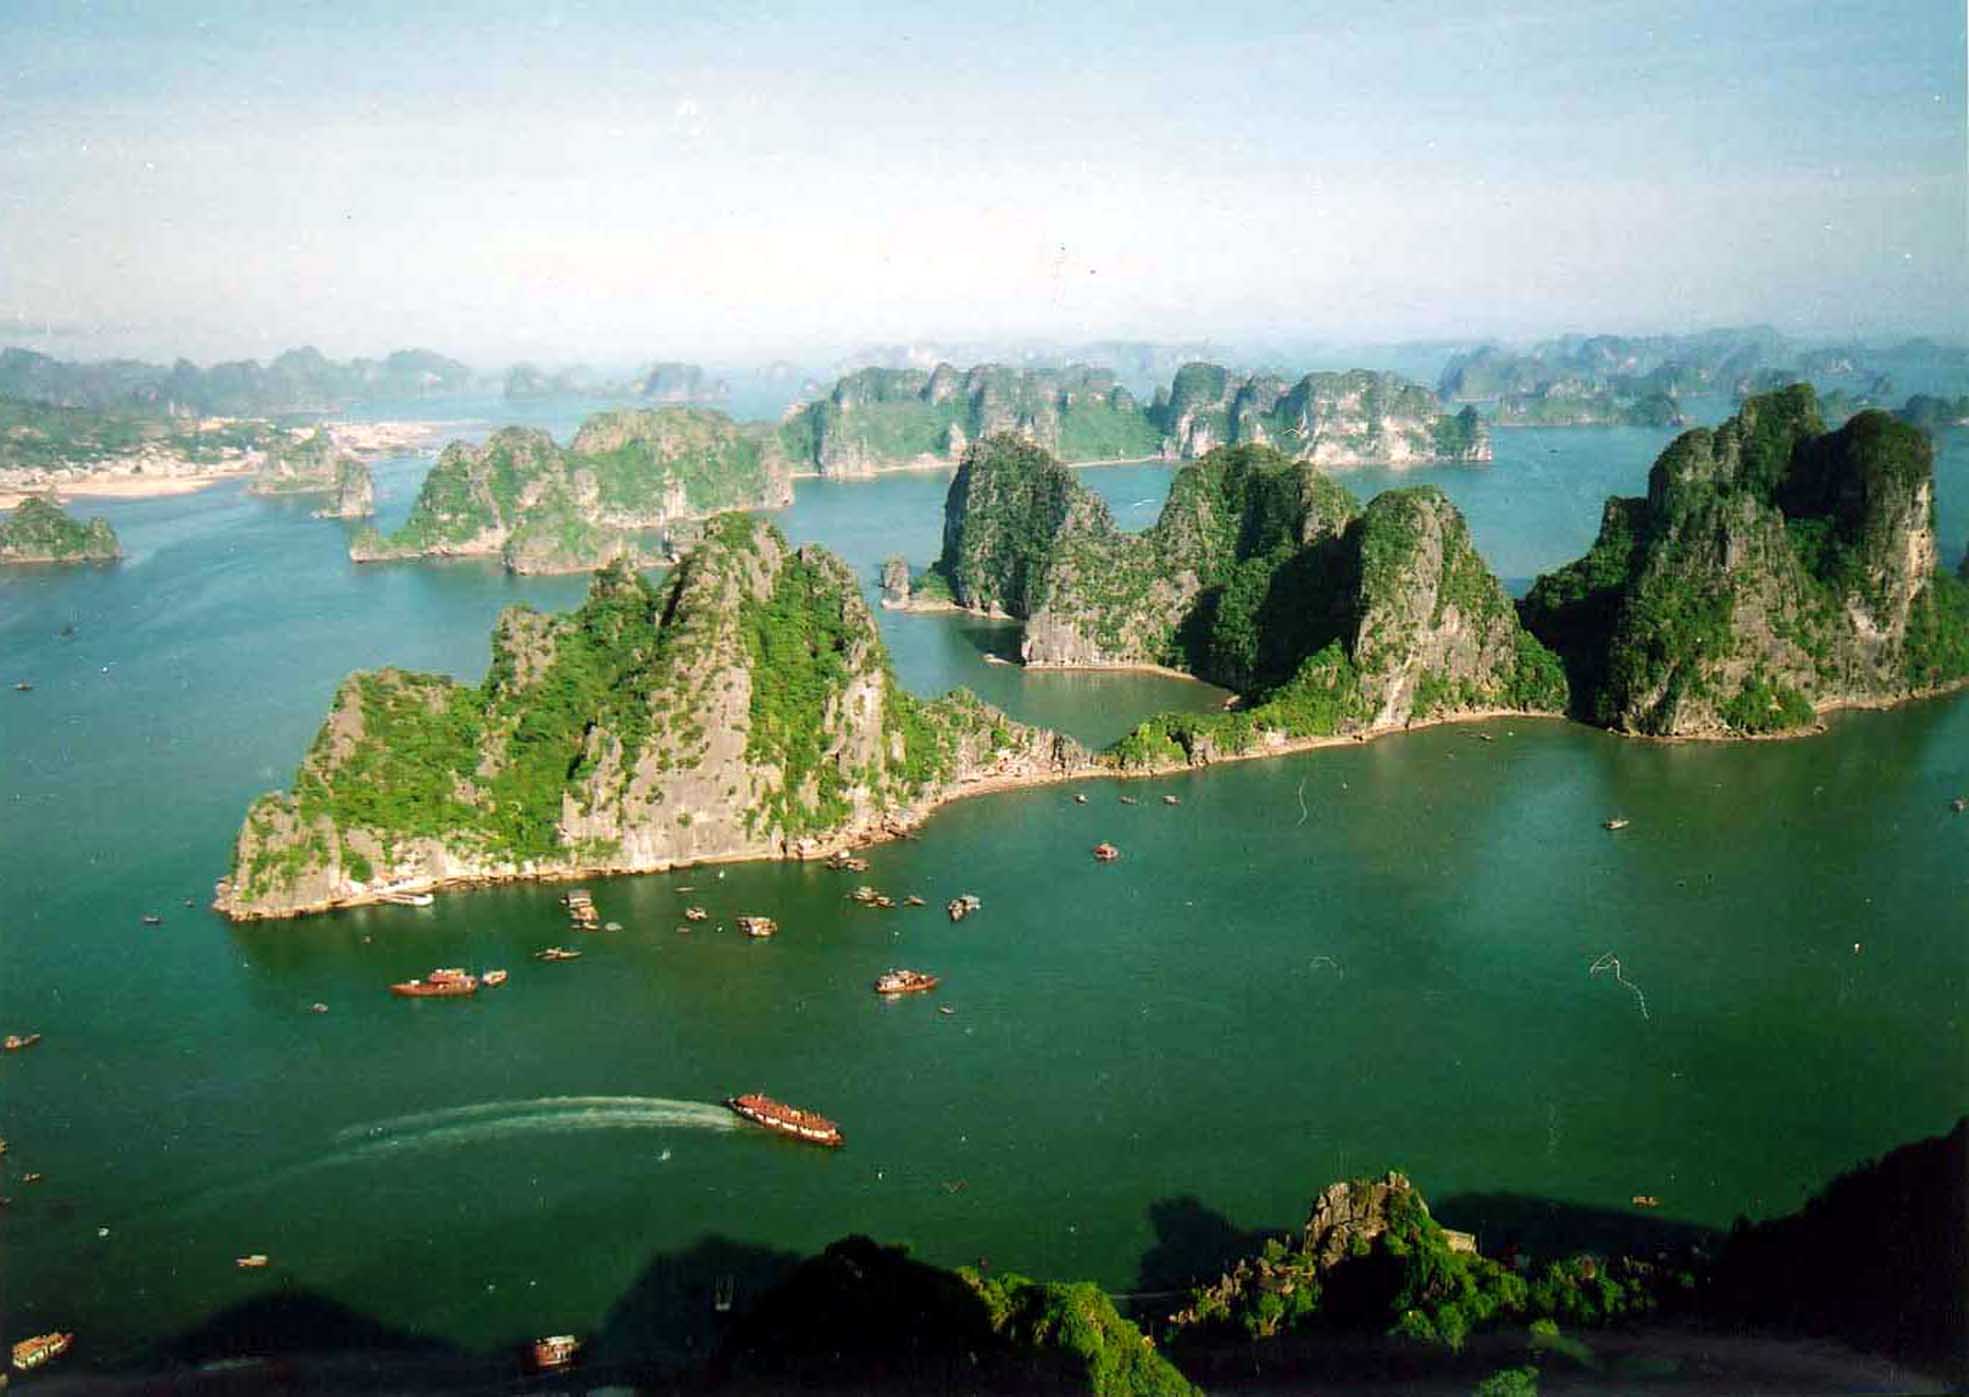 Quang Ninh - một tỉnh đầy nắng gió và bờ biển đẹp như mơ. Hãy cùng nhau khám phá những hình ảnh đẹp nhất của Quảng Ninh và tìm hiểu về lịch sử và văn hóa đặc trưng của vùng đất này.